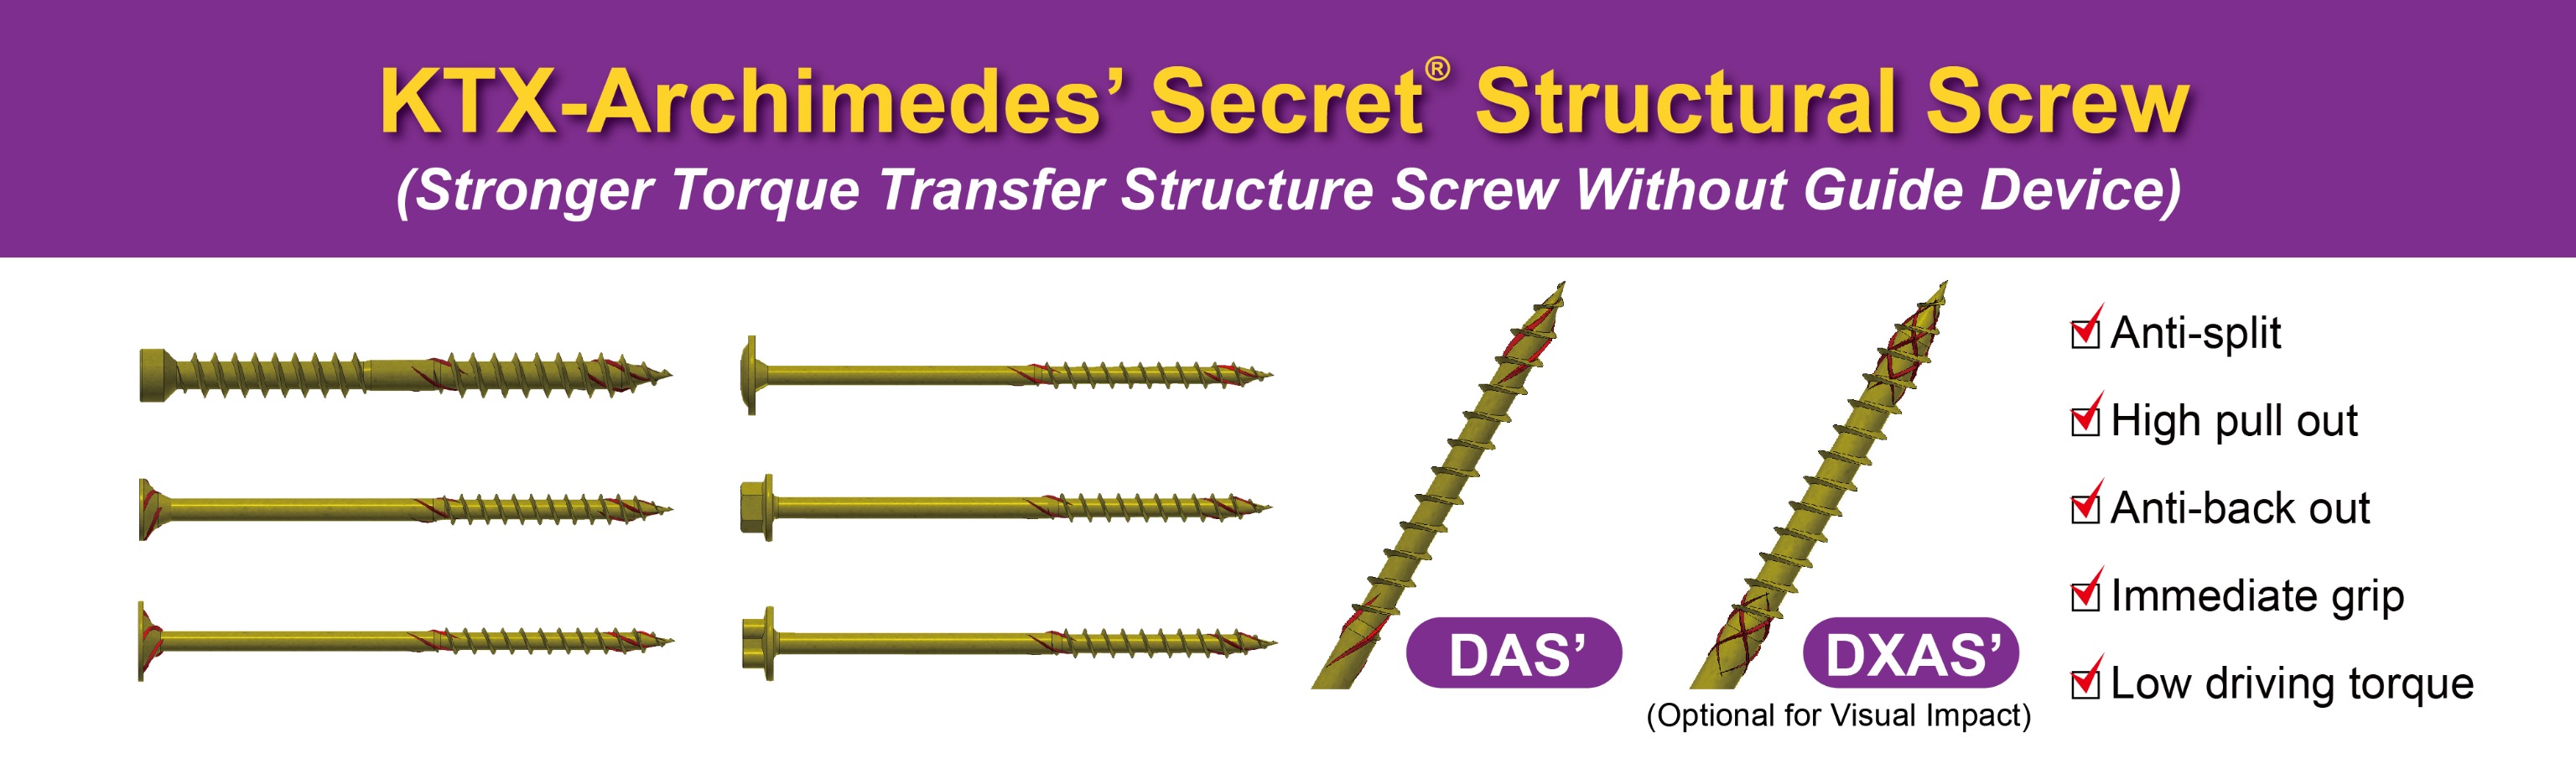 KTX-Archimedes' Secret Structural Screw